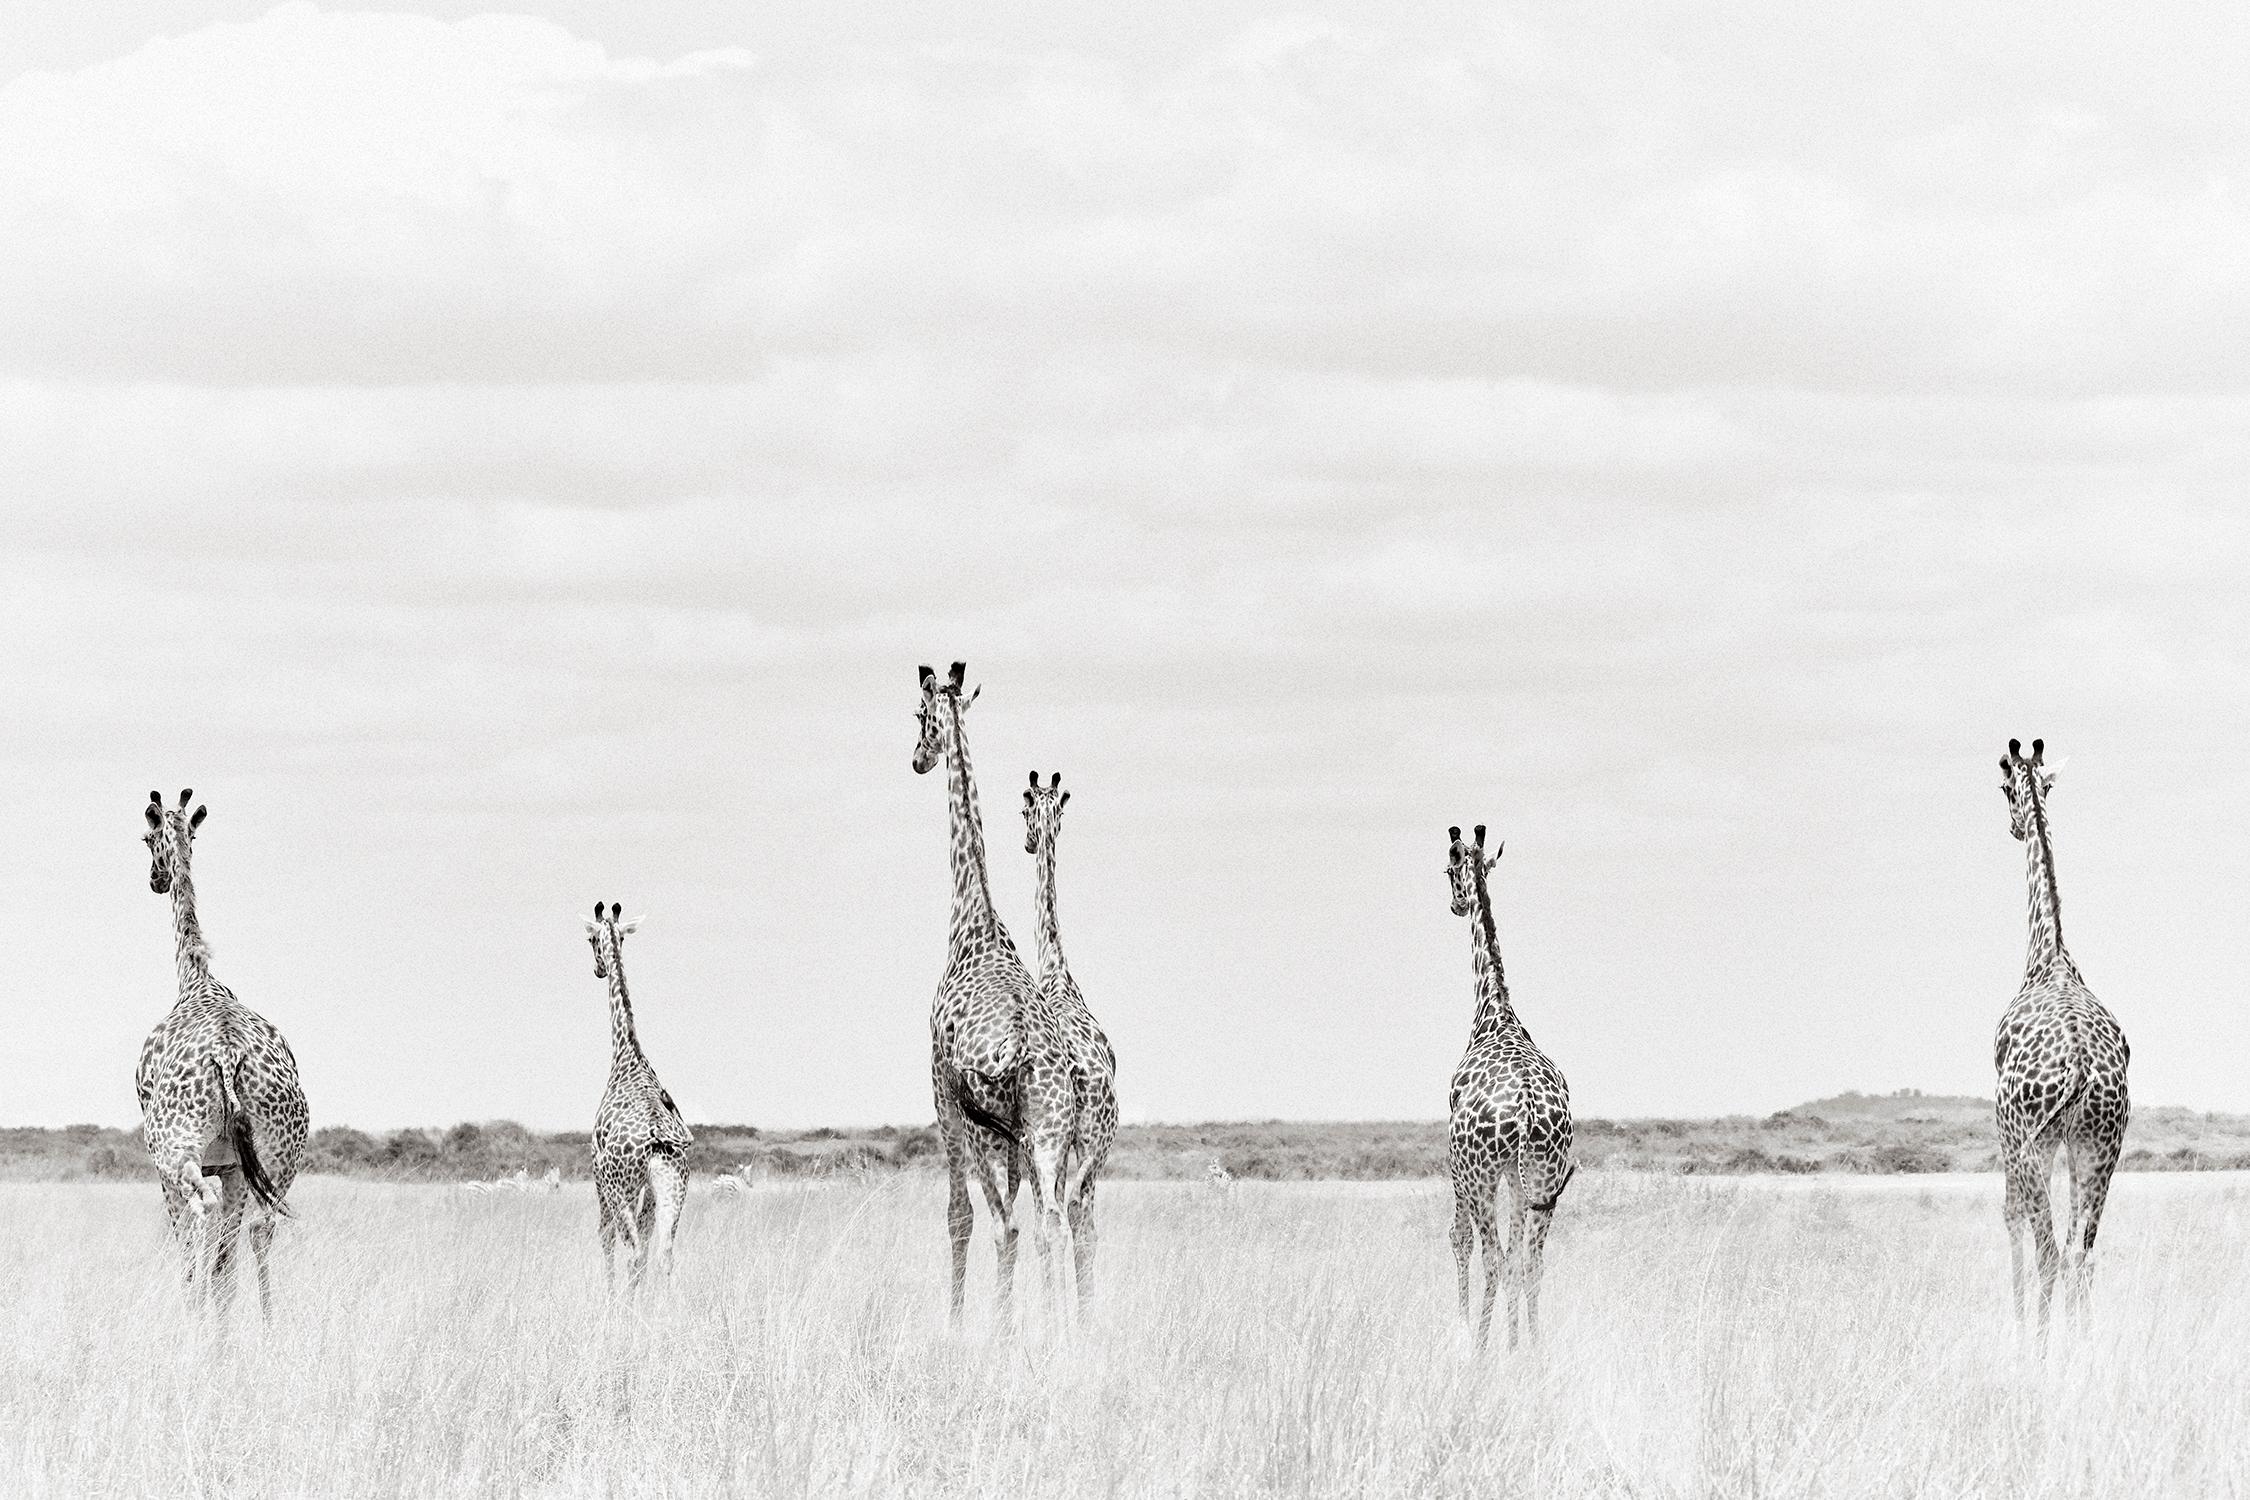 Drew Doggett Black and White Photograph – Gruppe von Giraffen, die etwas in der Ferne betrachten, Wildtiere, Kenia